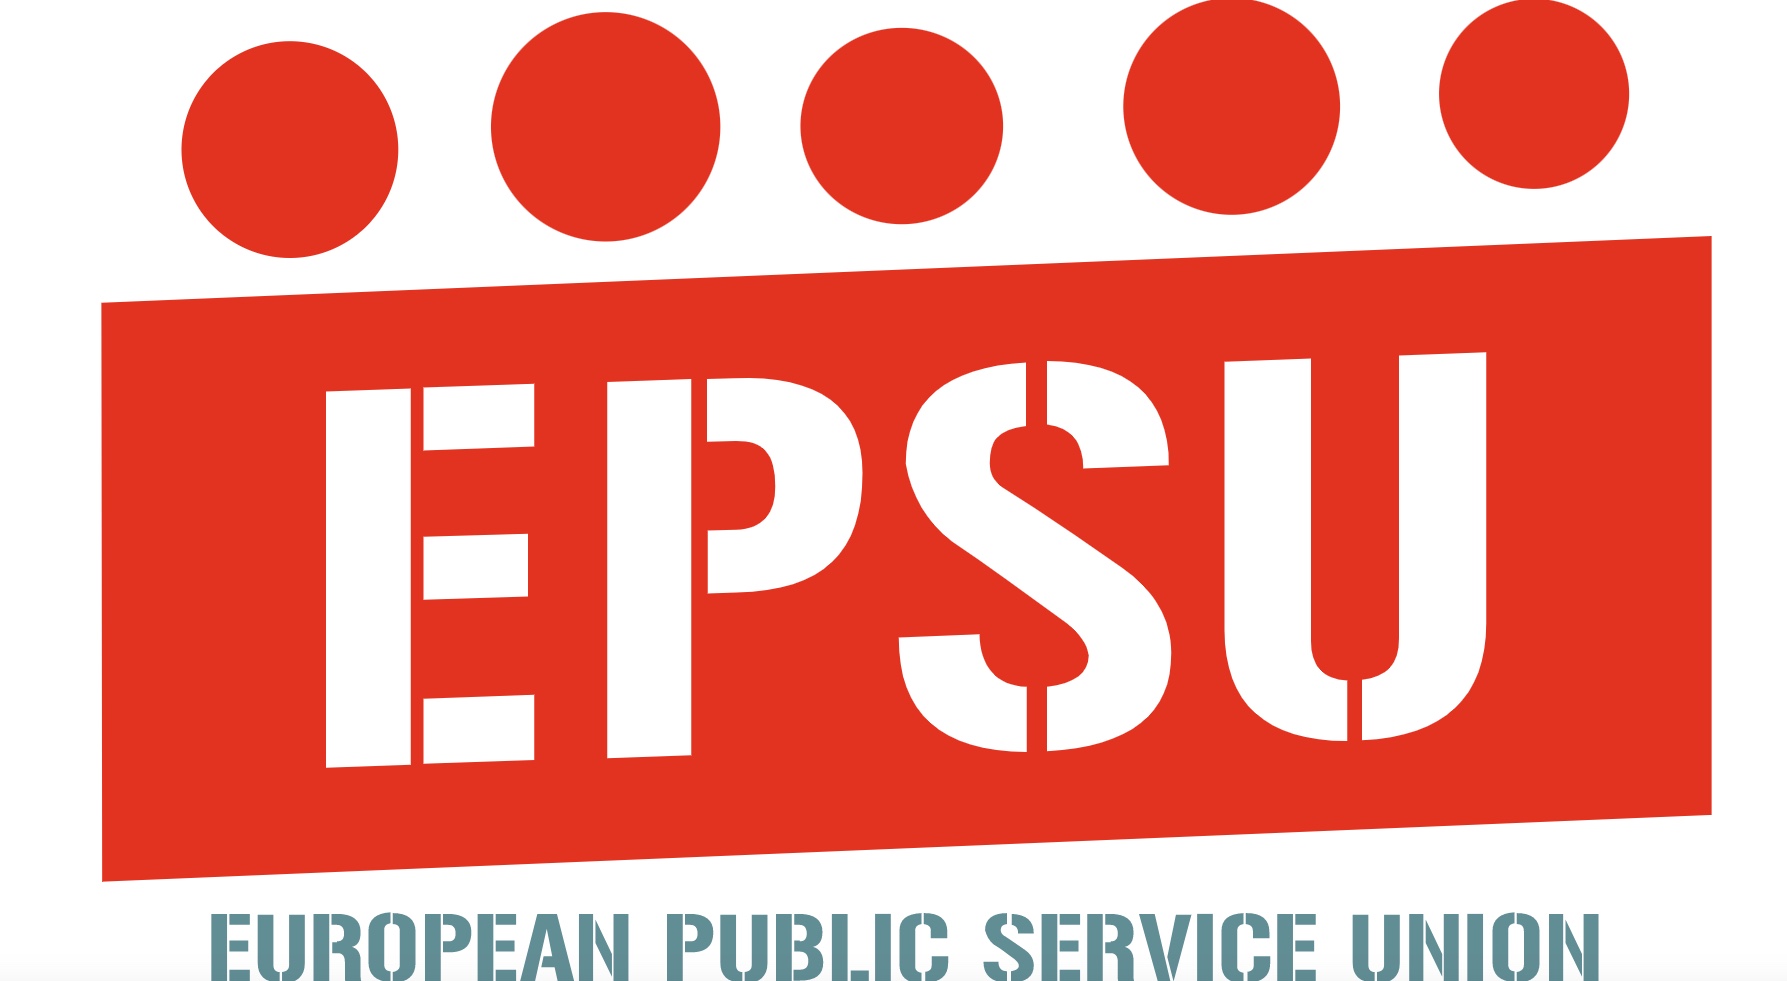 epsu logo